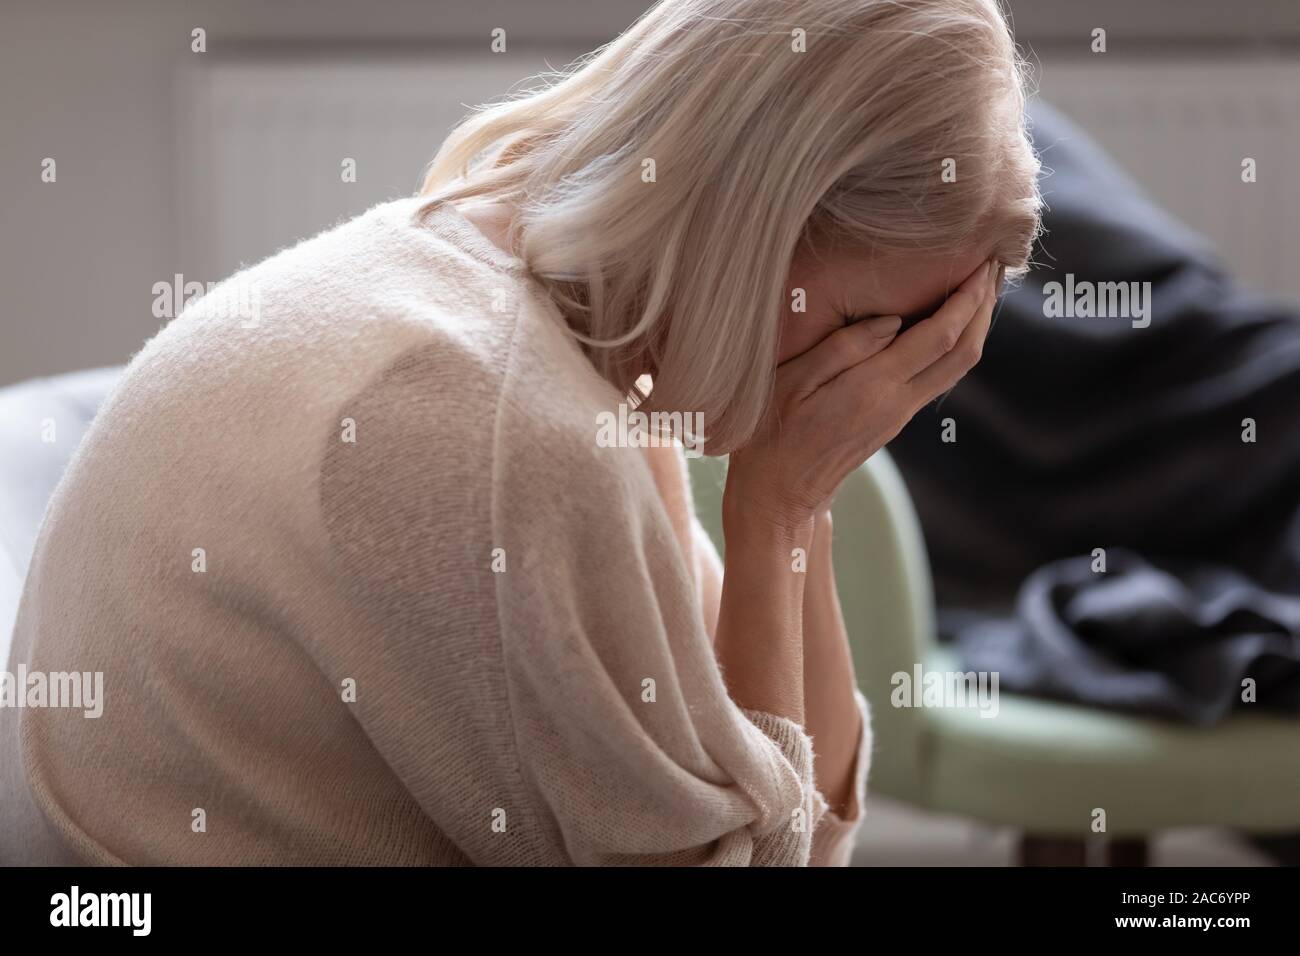 Ältere Frau versteckt Gesicht mit den Händen auf der Couch sitzt weinend Stockfoto